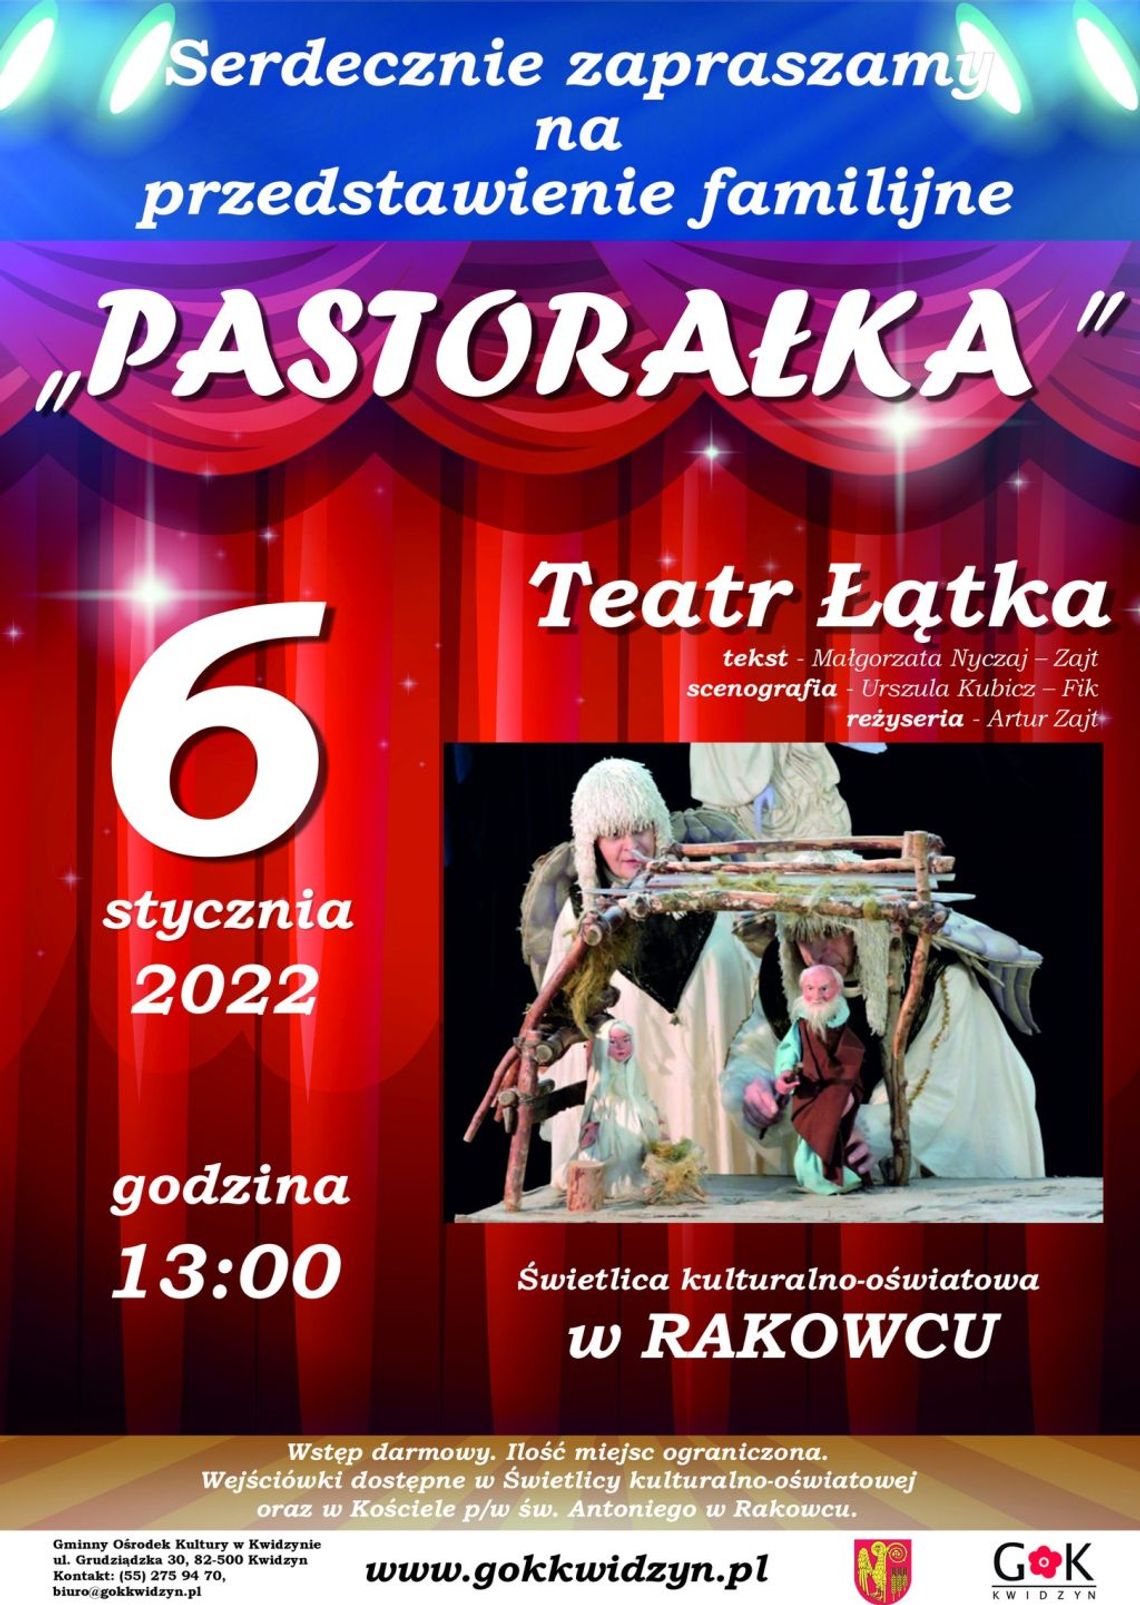 Pastorałka - przedstawienie familijne w Rakowcu z okazji święta Trzech Króli